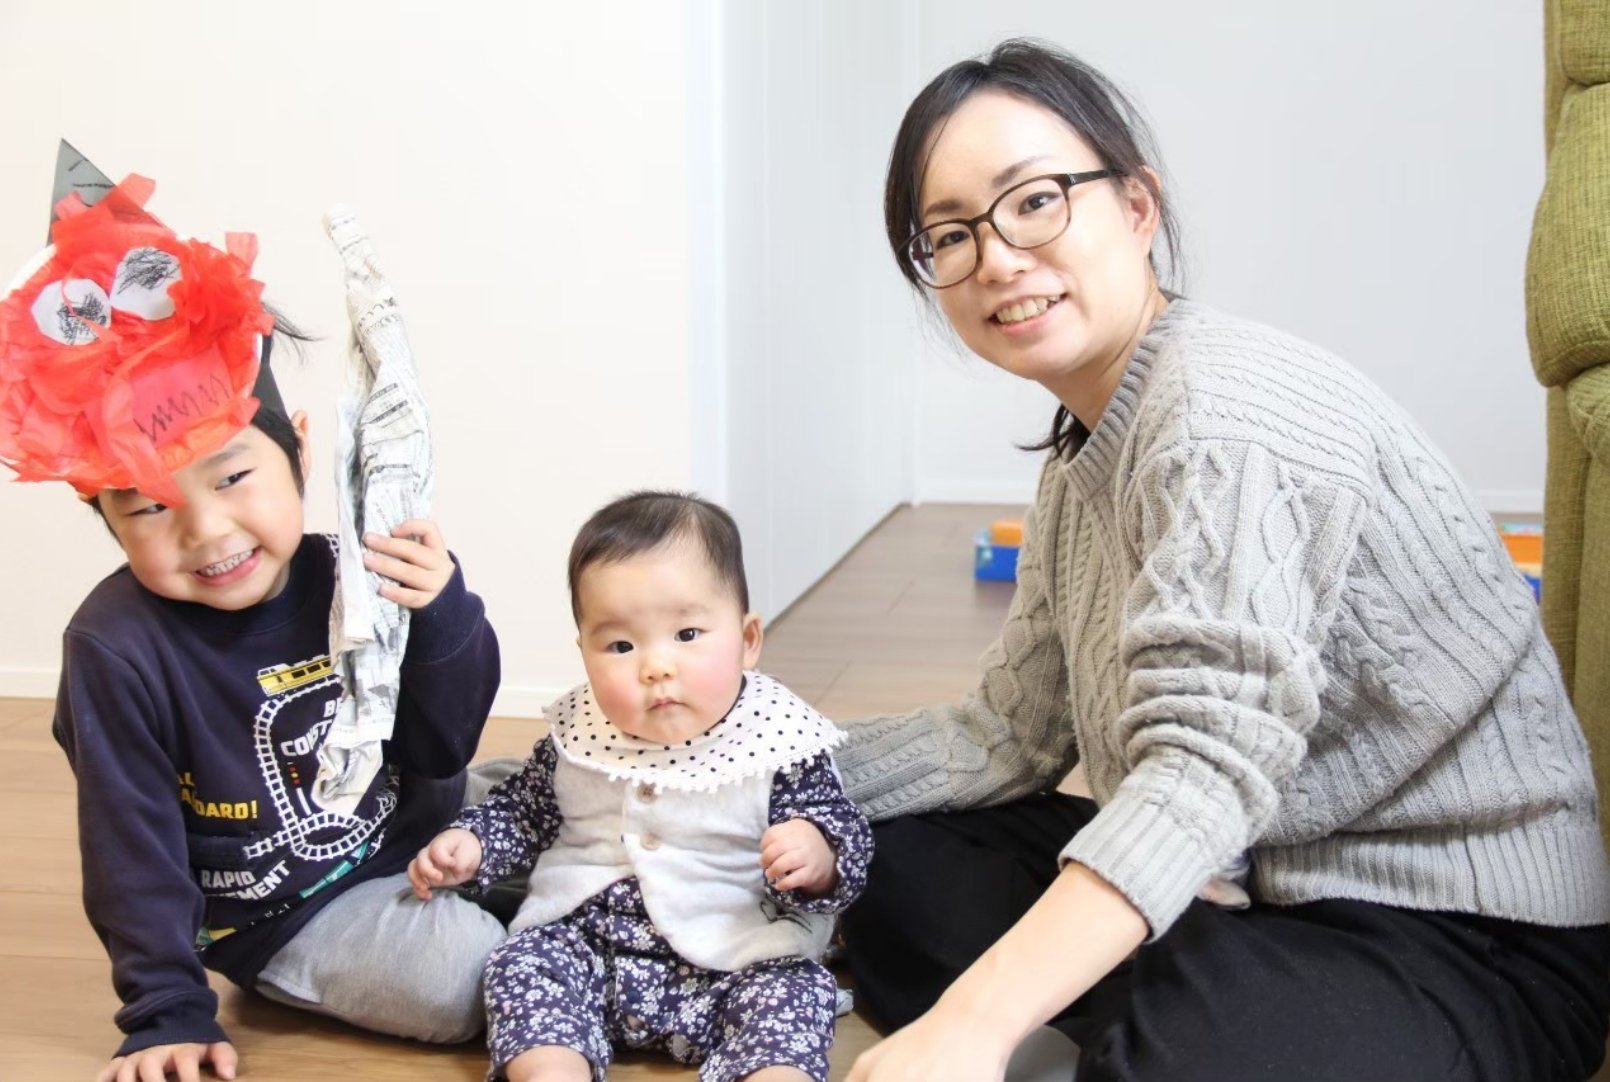 左から、5歳の息子さん、1歳の娘さん、渡邉さん